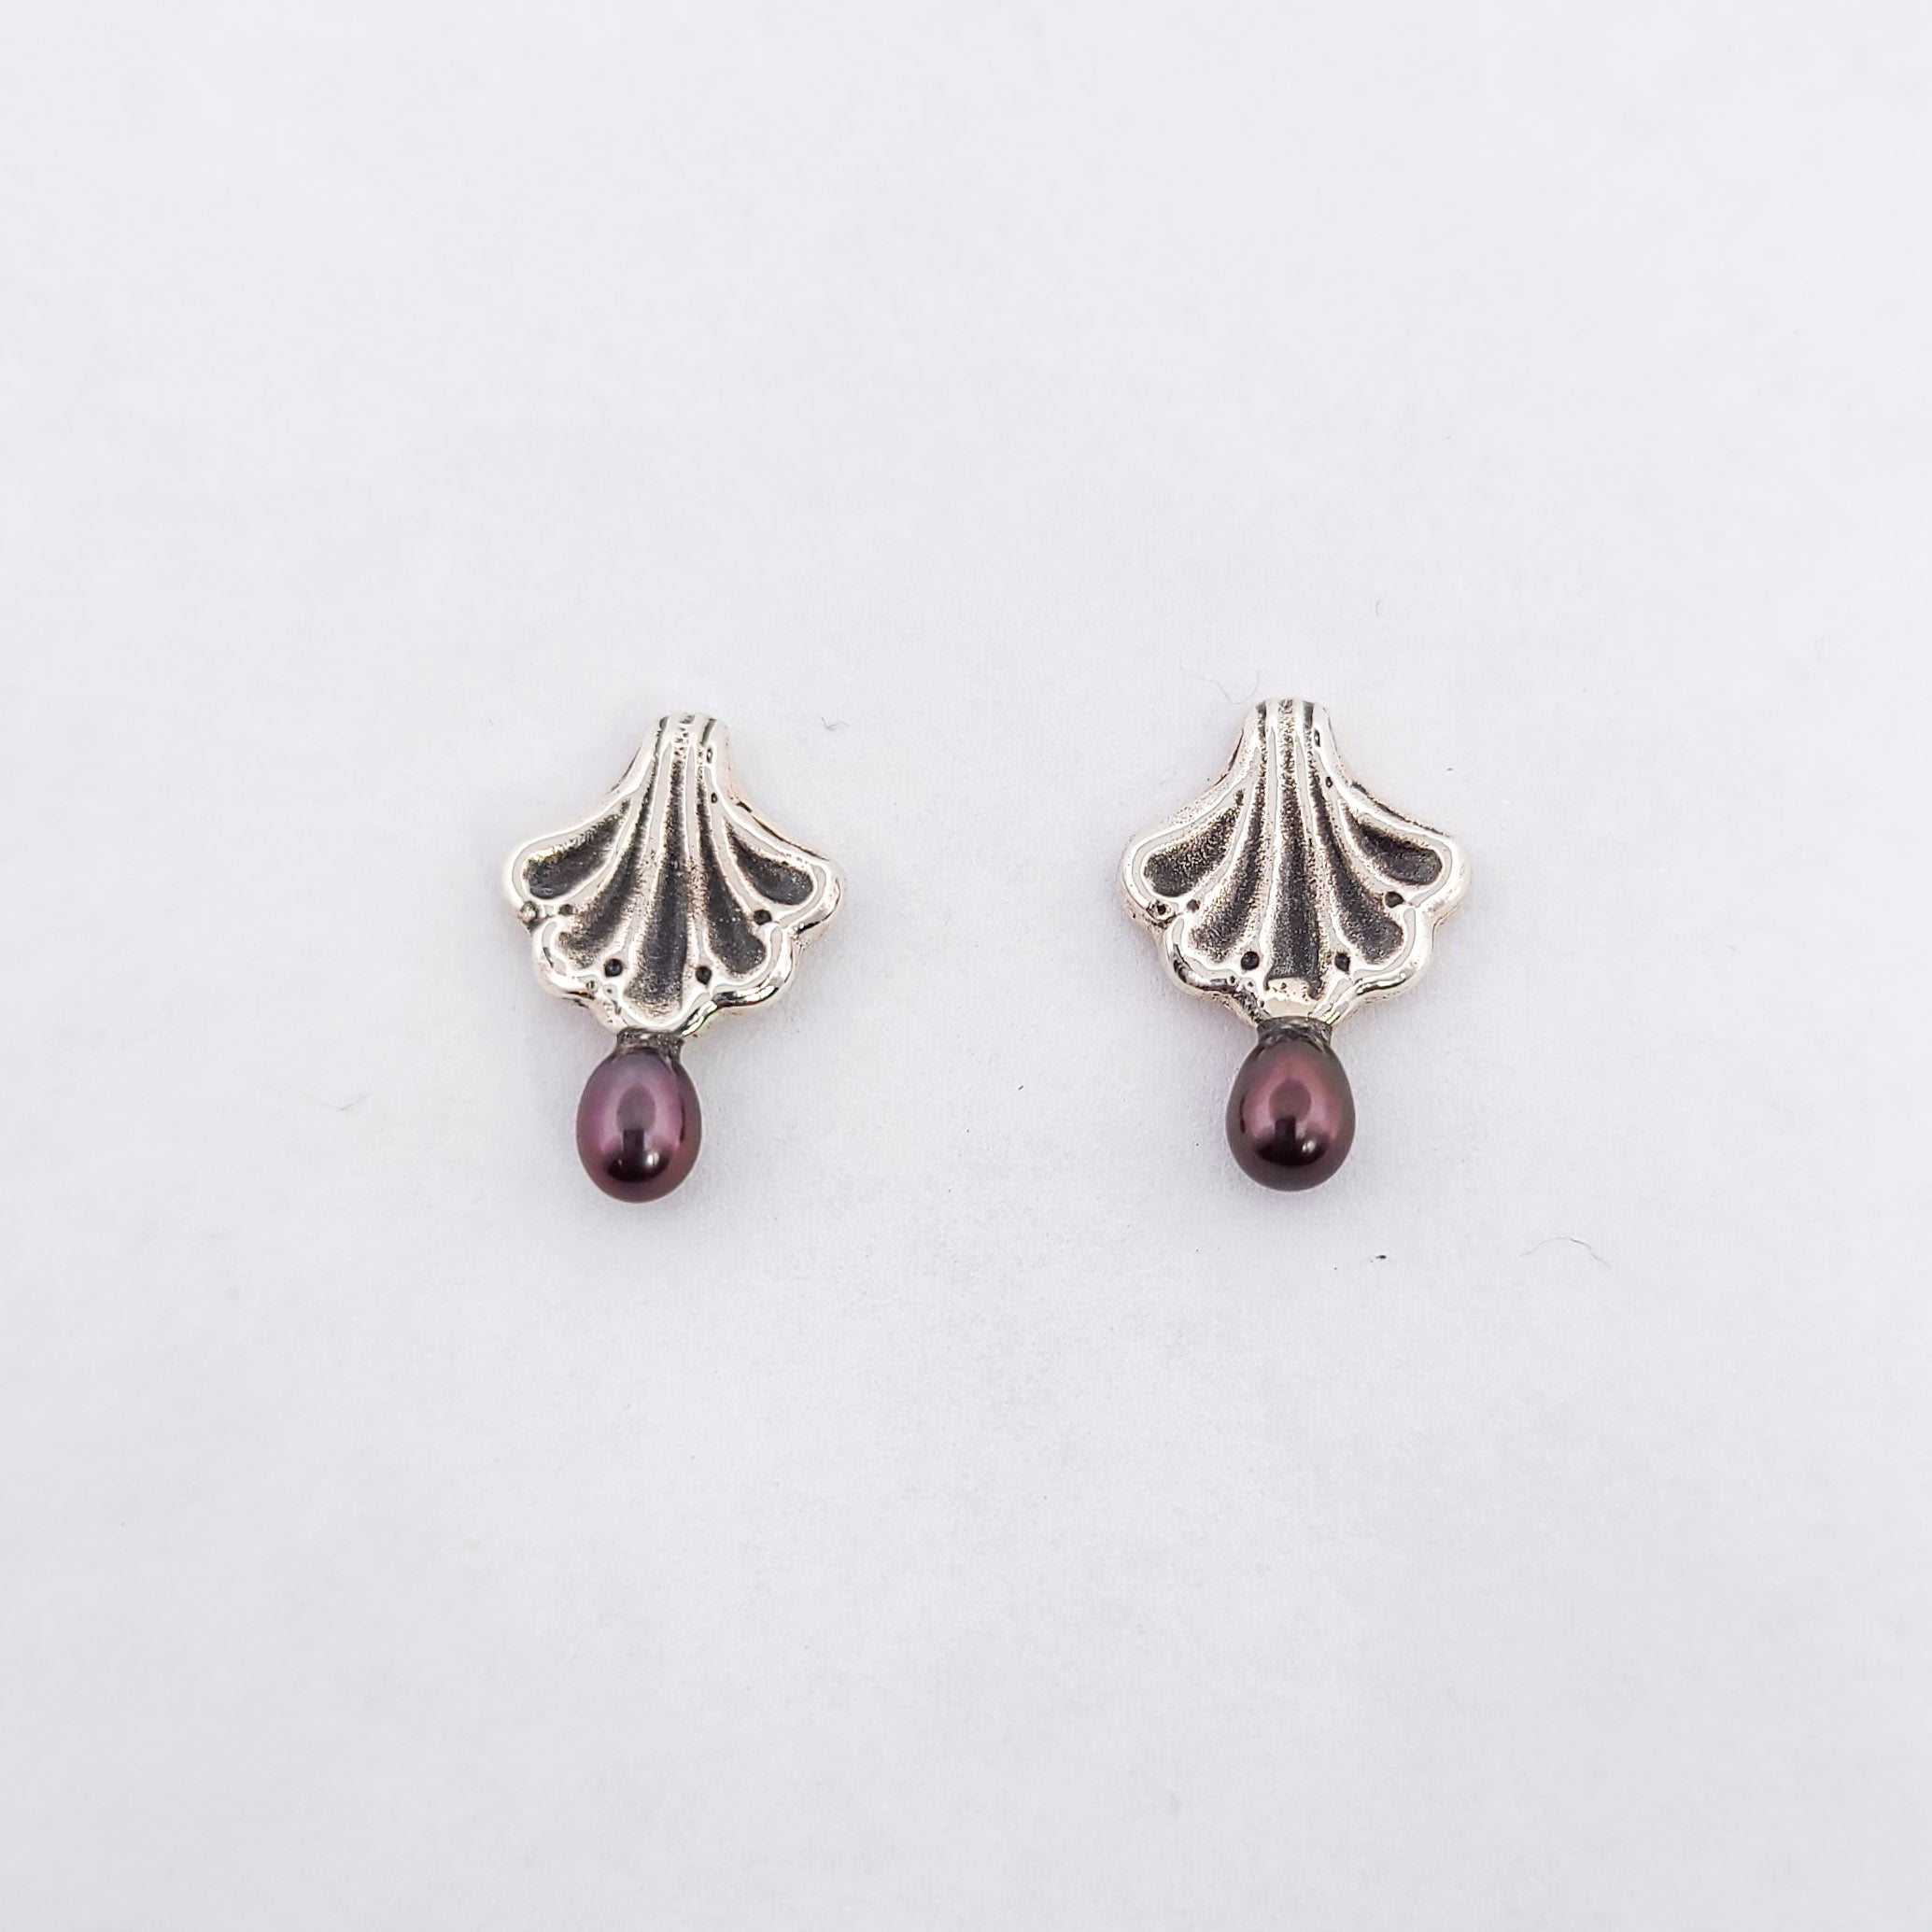 Ornate Seashell Earrings with Dark Pearls